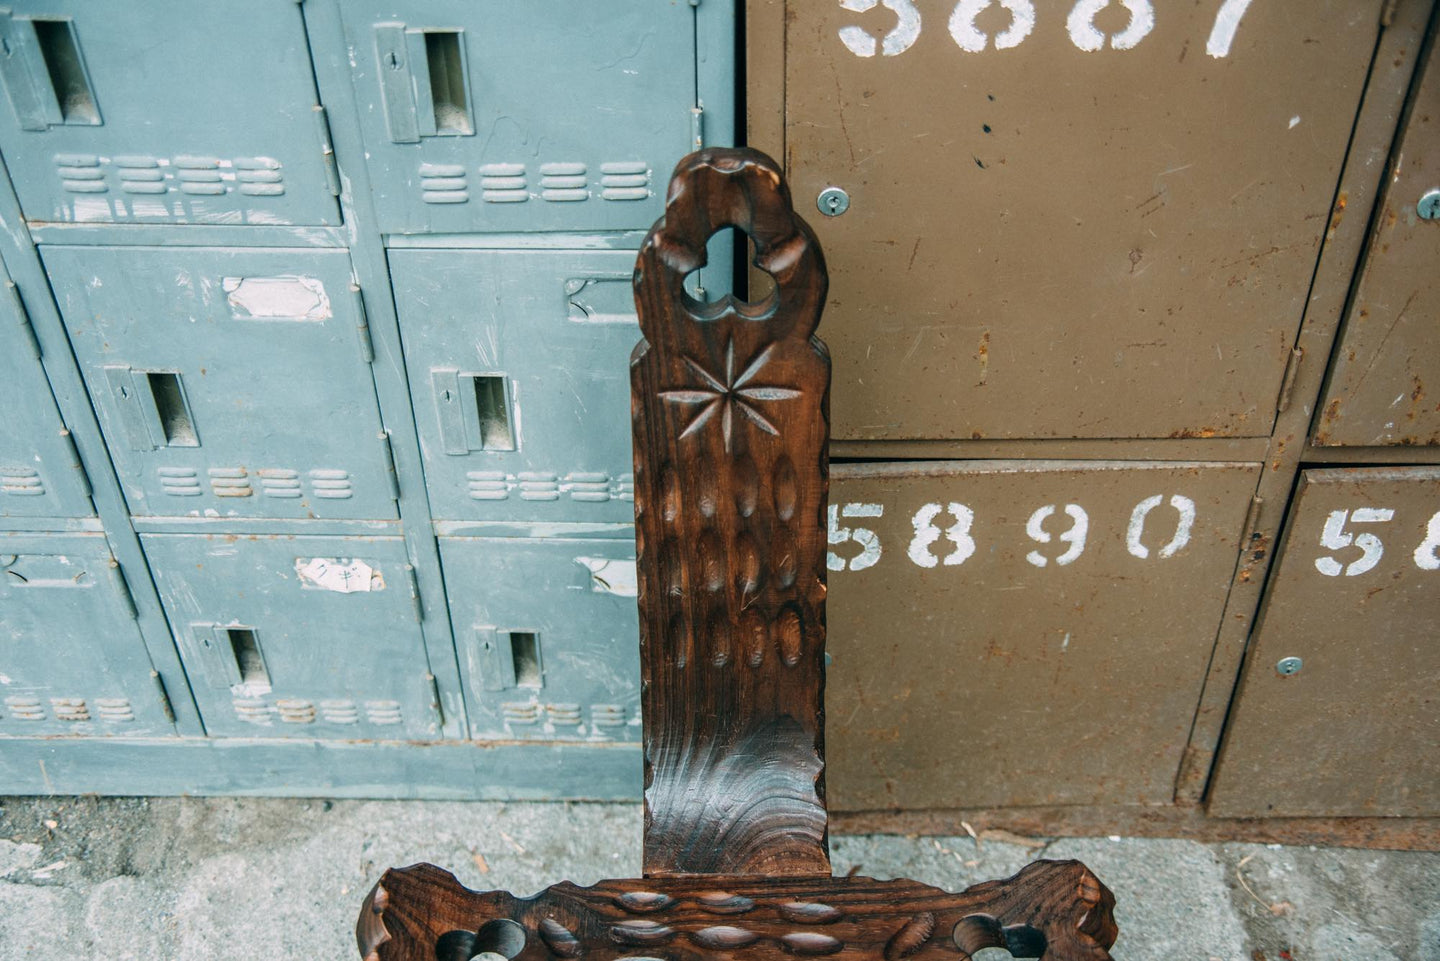 スペイン製の3つ脚の彫の木製椅子